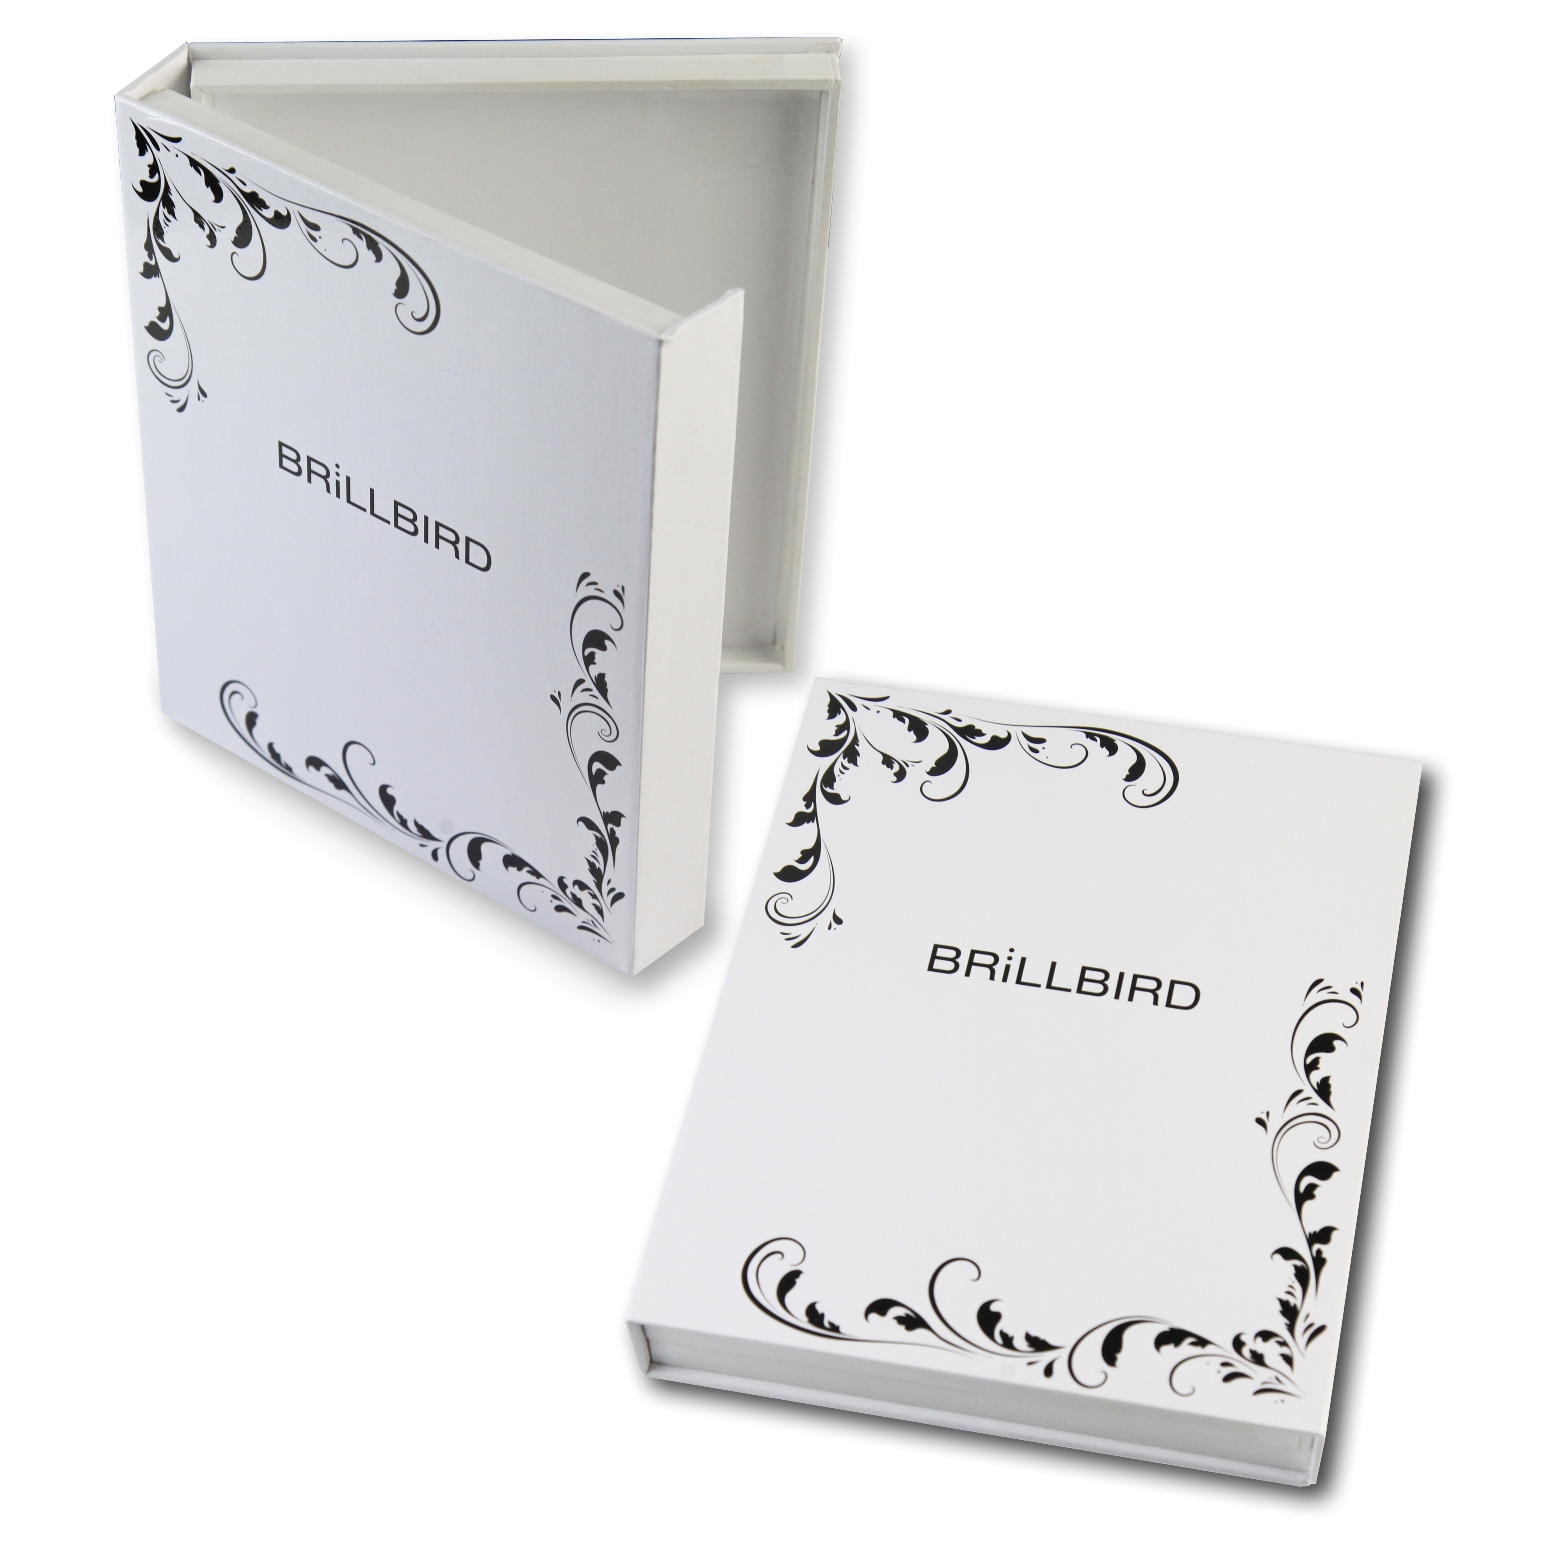 BrillBird - Nail Art Display Box